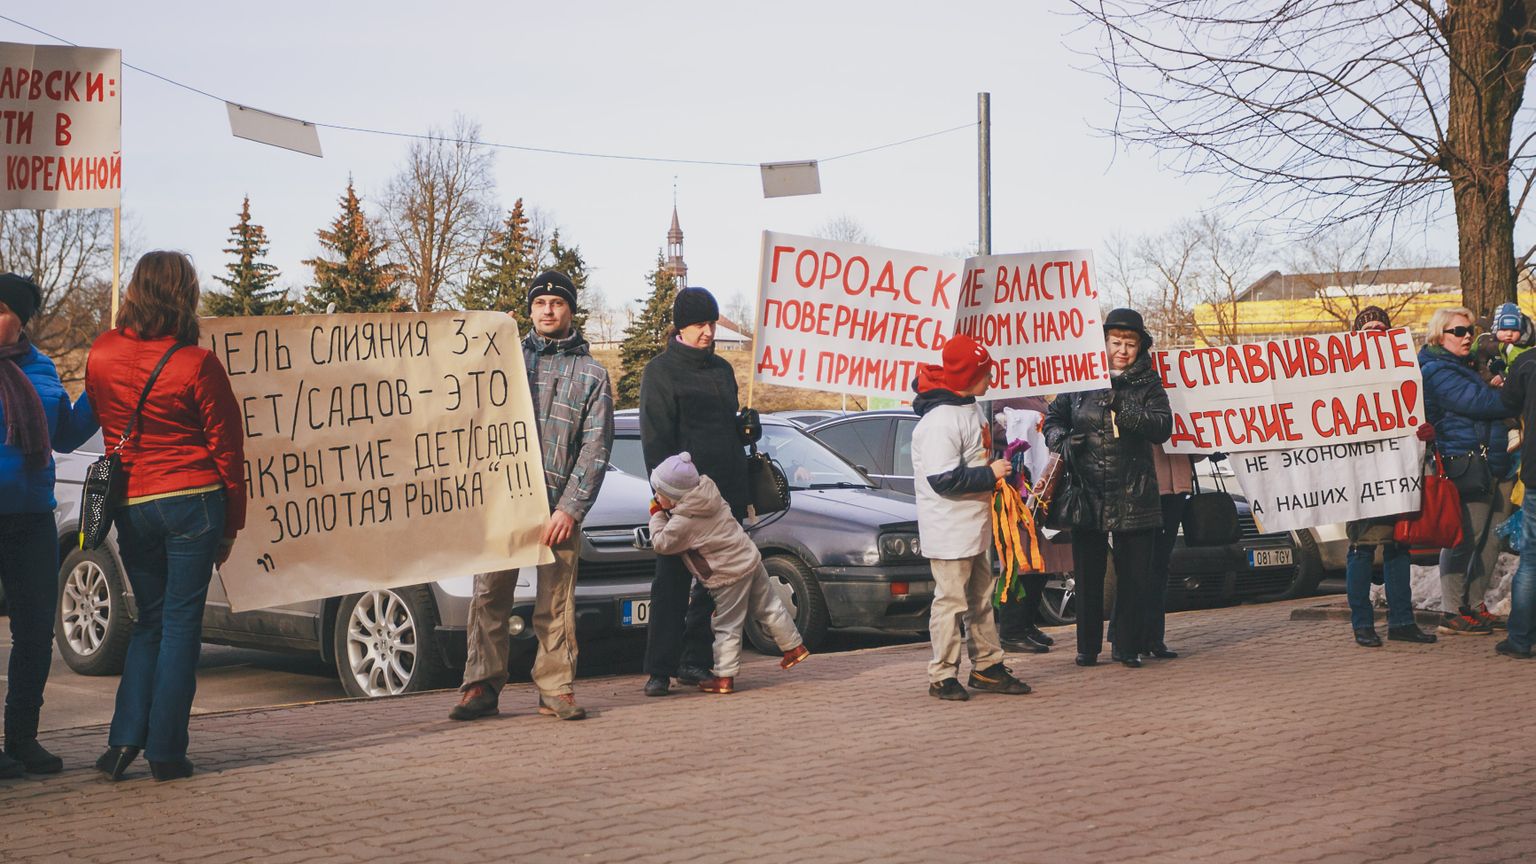 Пикет на Петровской площади Нарвы в марте 2015 года, когда горожане отстаивали детский сад "Золотая рыбка". В 2022 году на кону сразу несколько нарвских детсадов и школ.